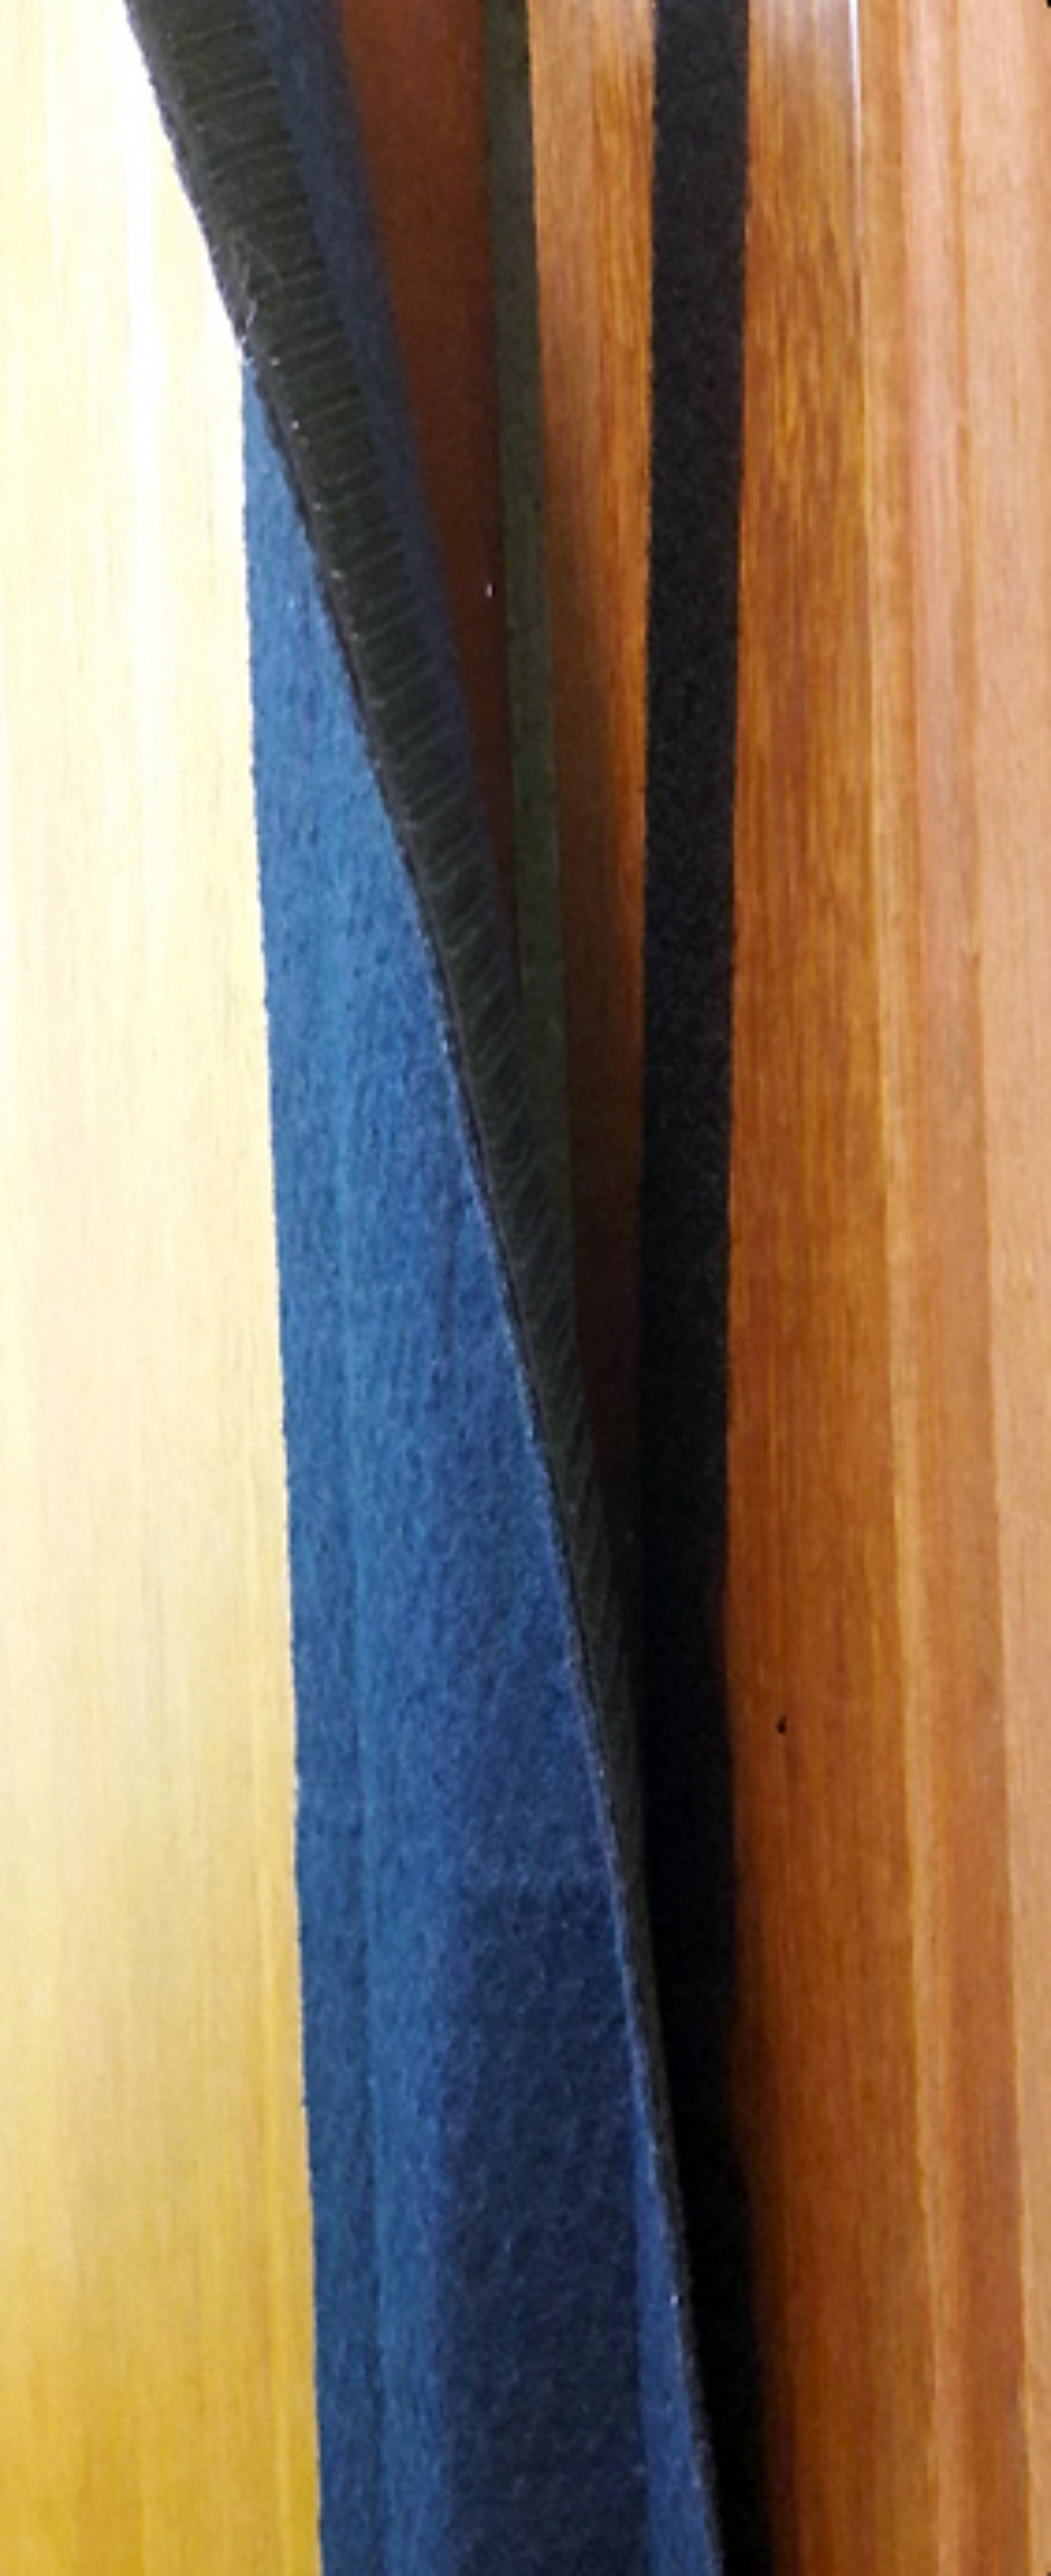 Acessório criado para proteger os dedos nas dobradiças de portas pode ser facilmente fixado por velcros (Divulgação/Rosanna de Aquino)